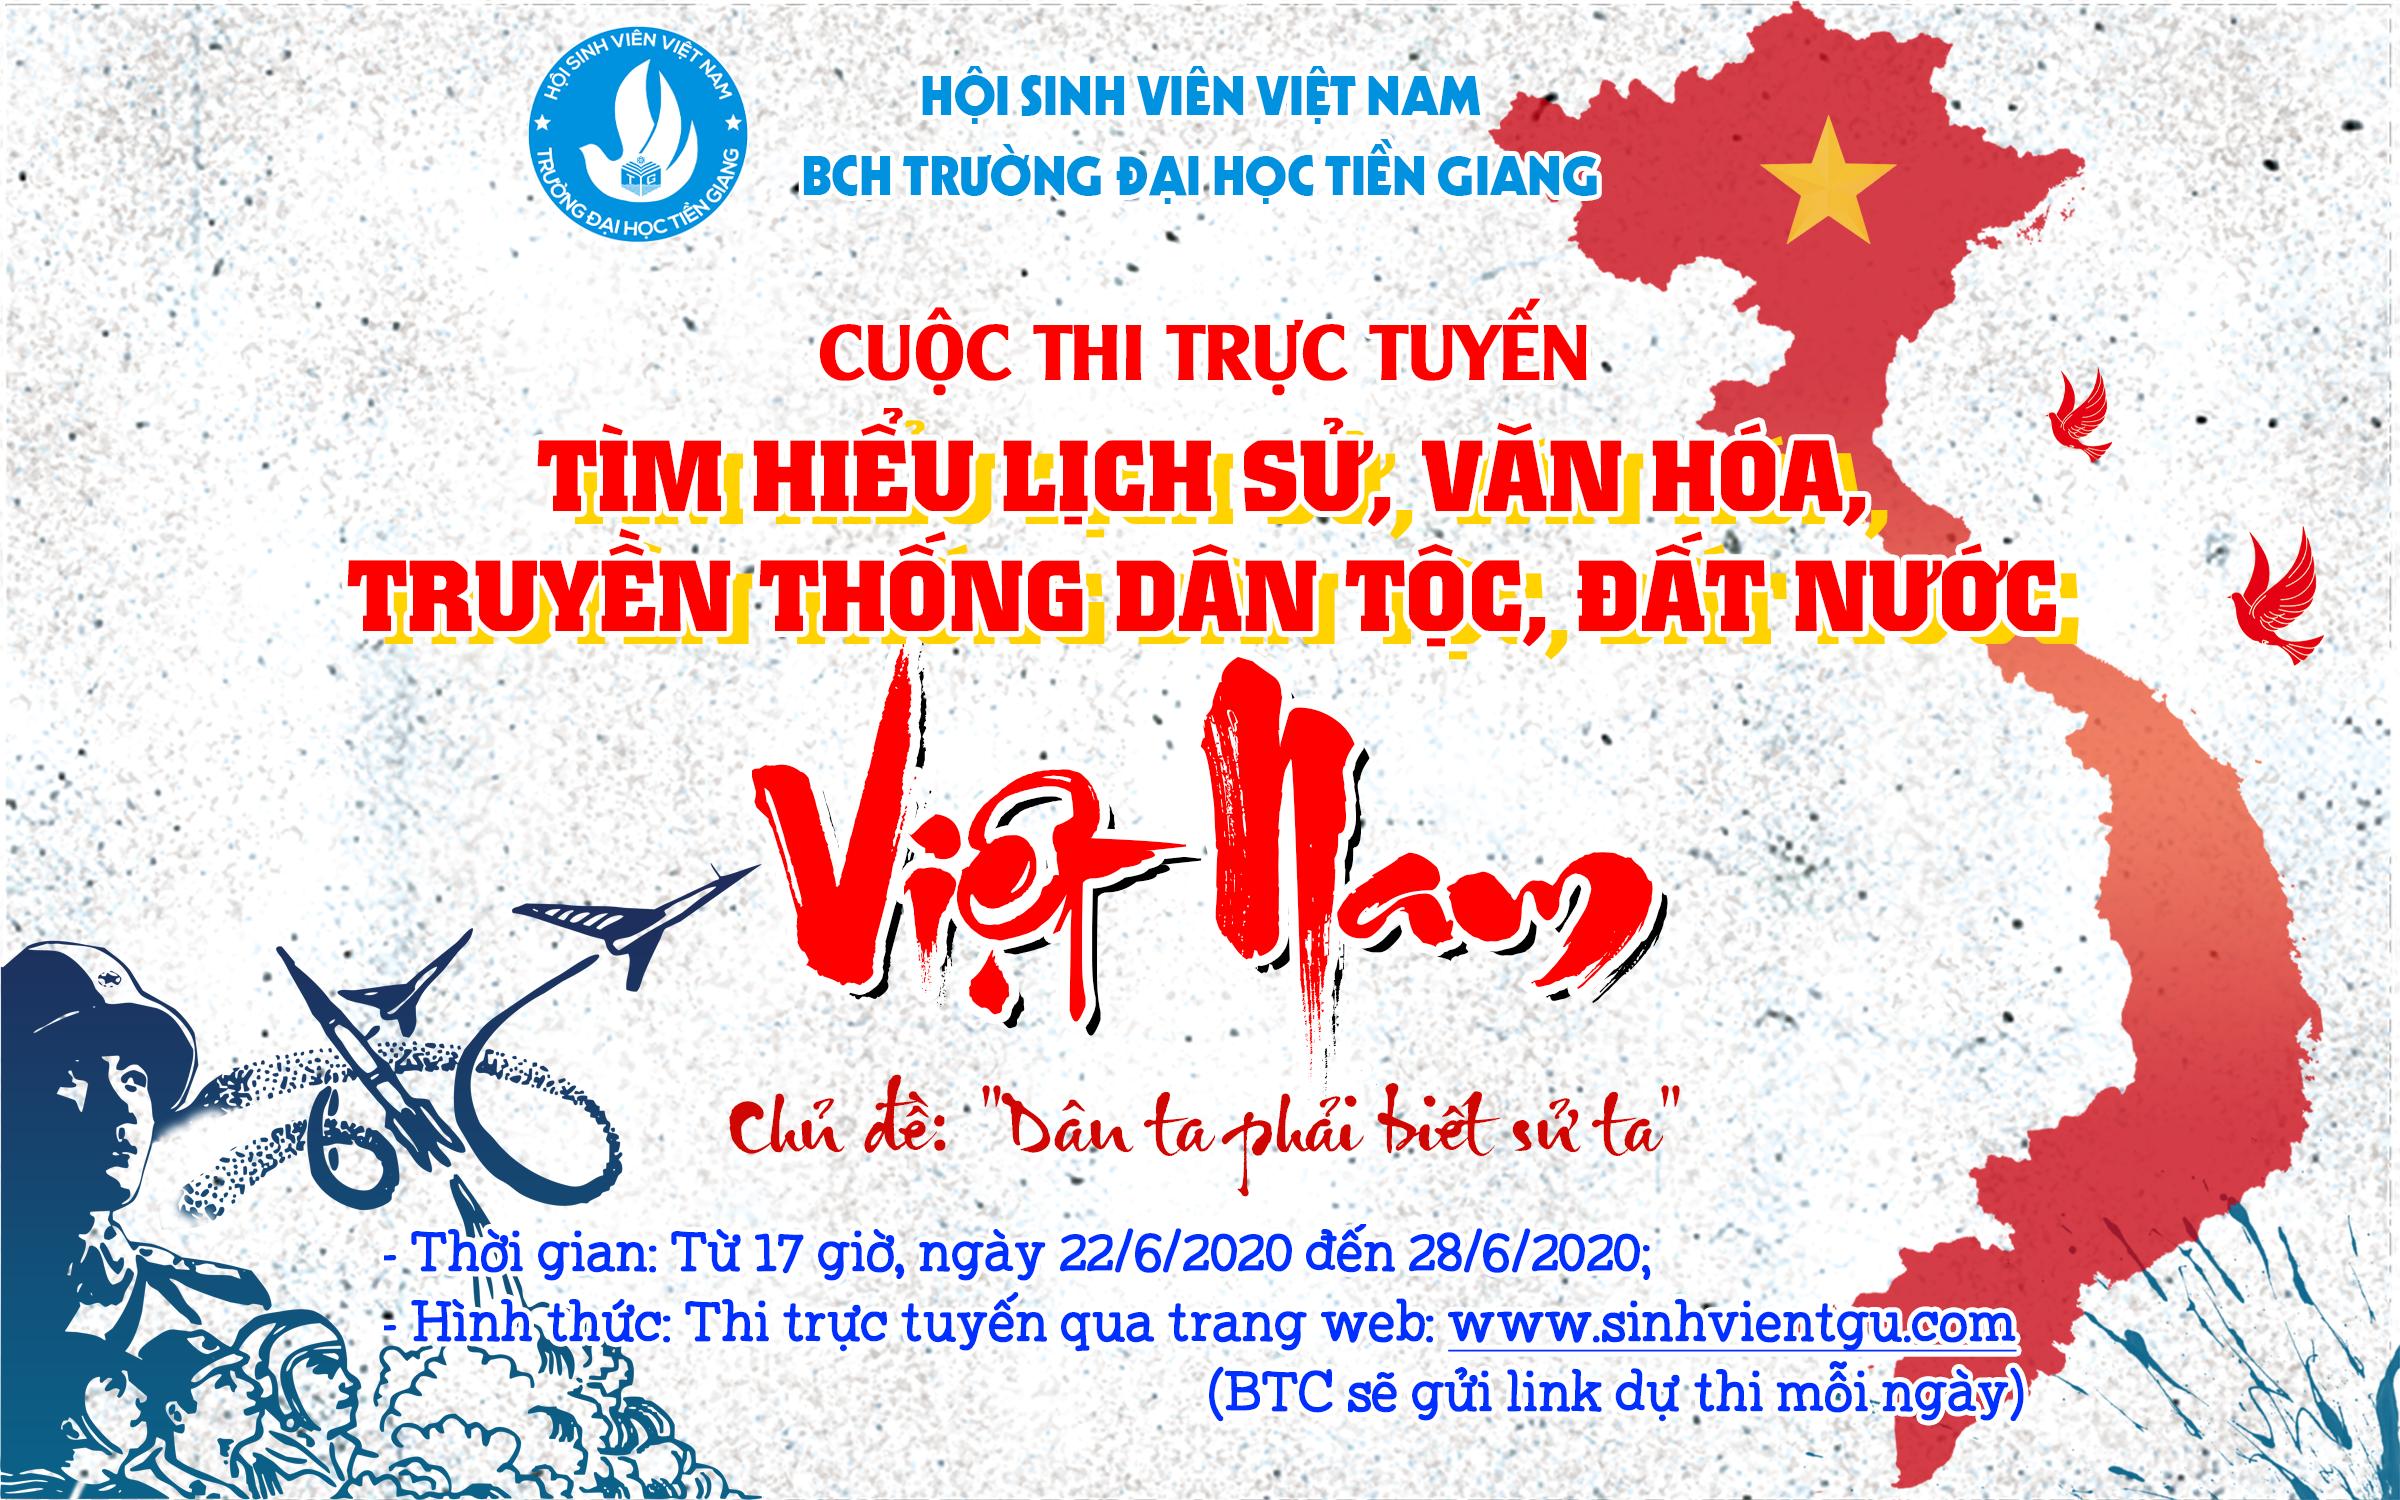 Cuộc thi trực tuyến: Tìm hiểu lịch sử, văn hóa,  truyền thống dân tộc, đất nước Việt Nam - Ngày 1